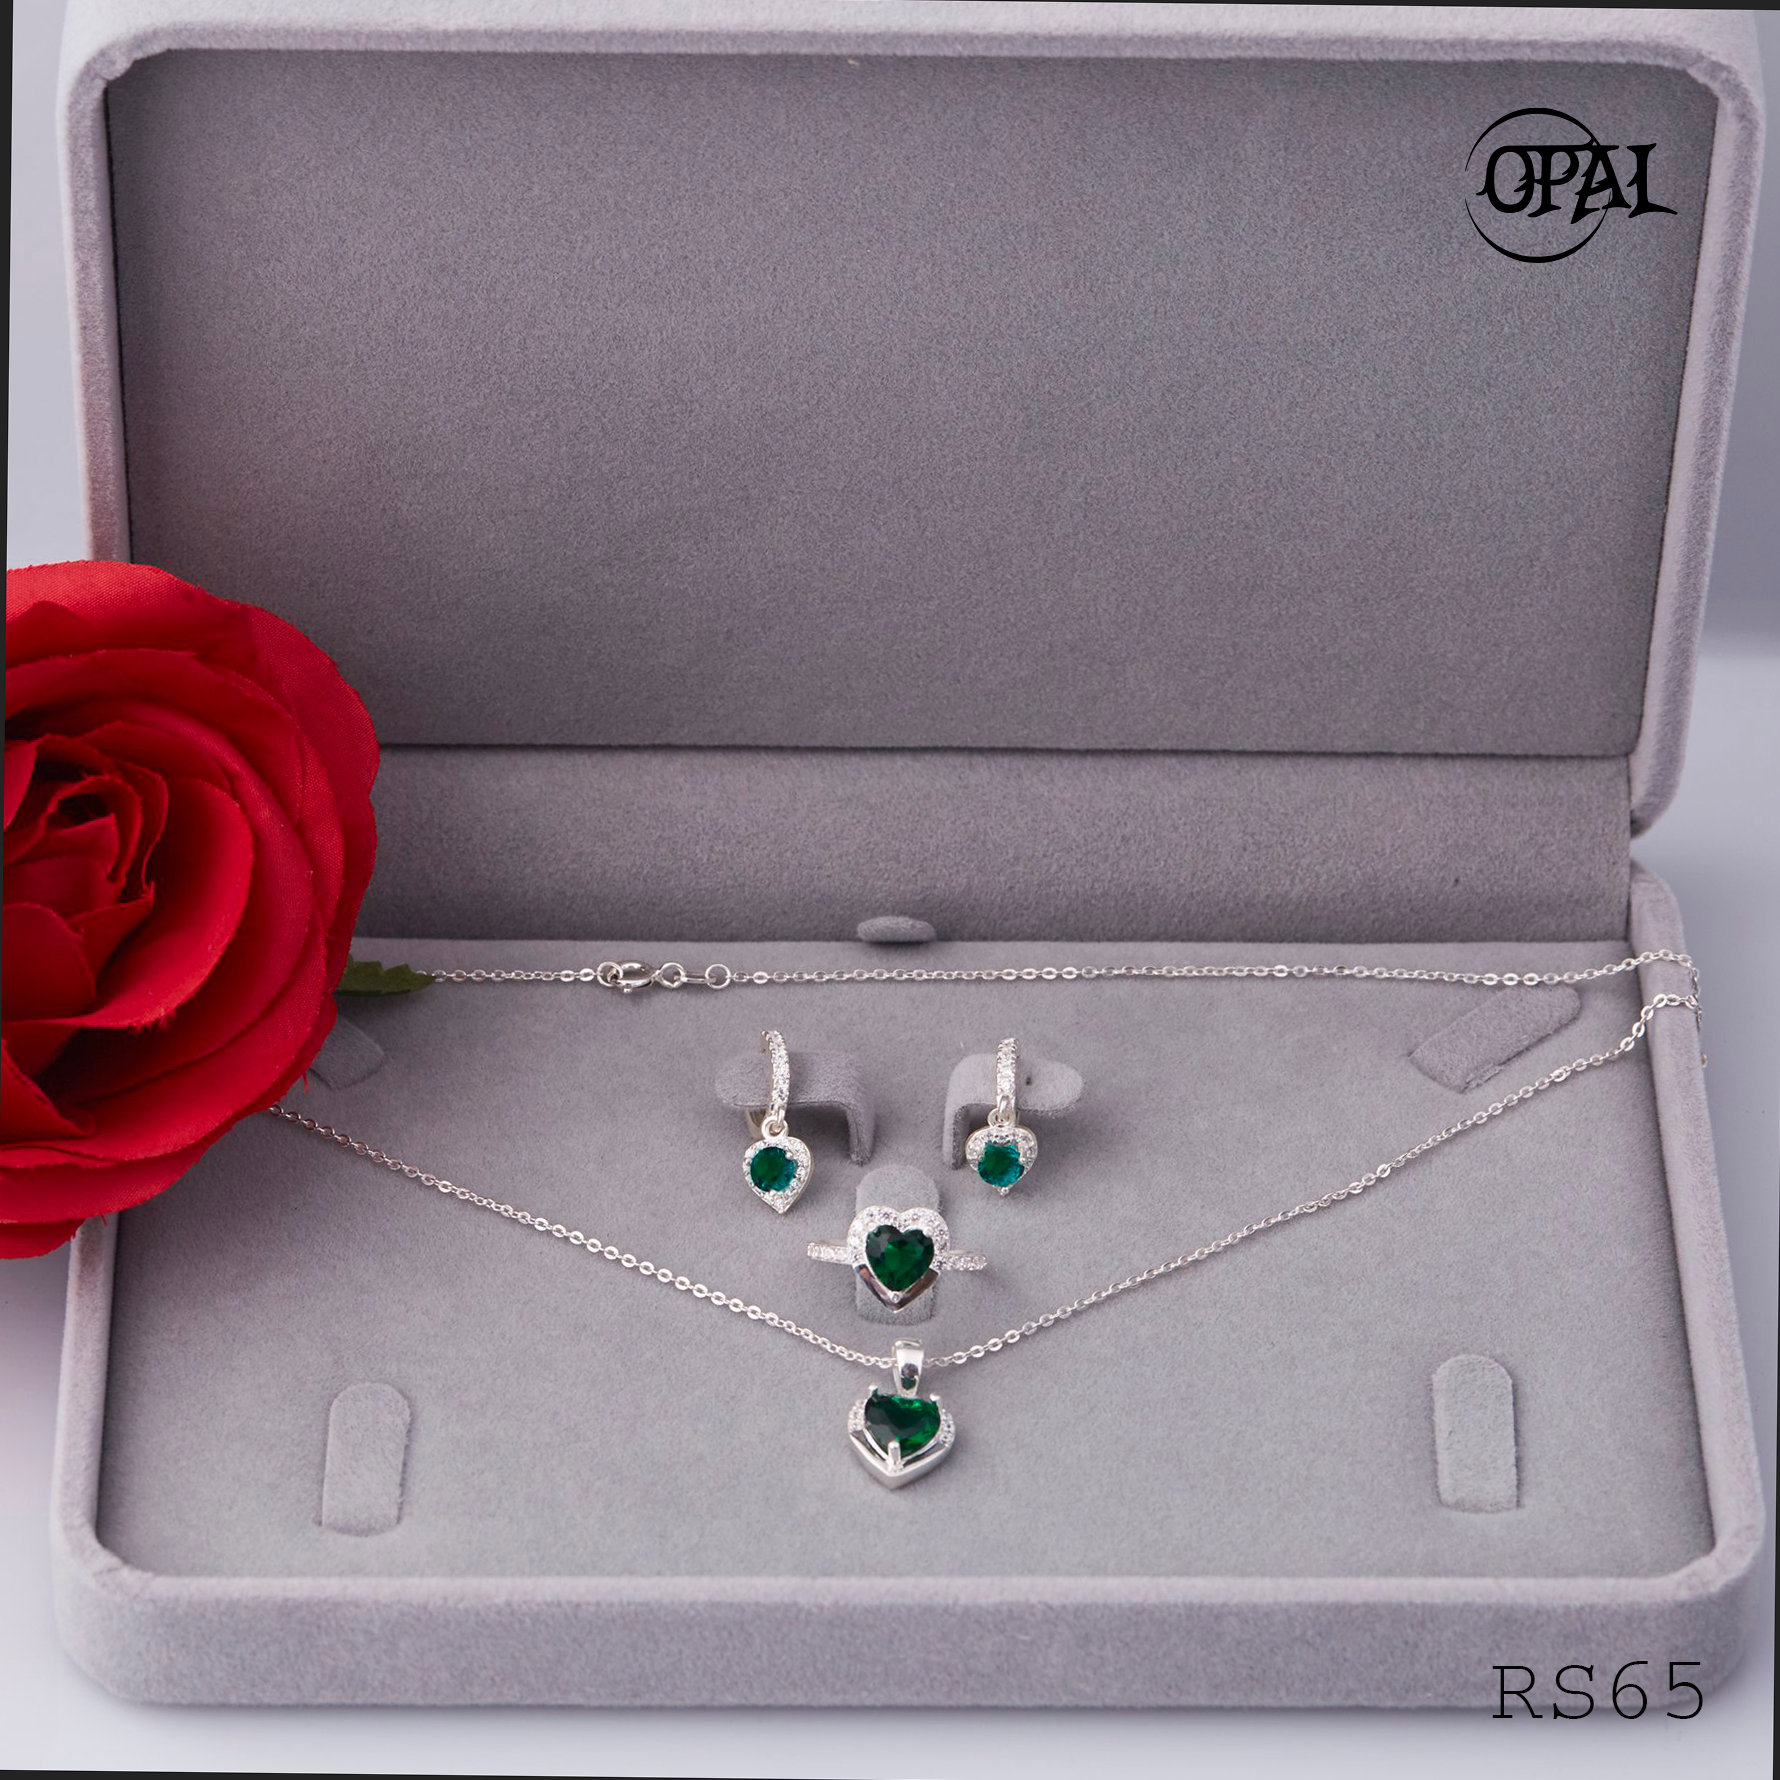  RS65- Bộ trang sức bạc đính đá ross OPAL 